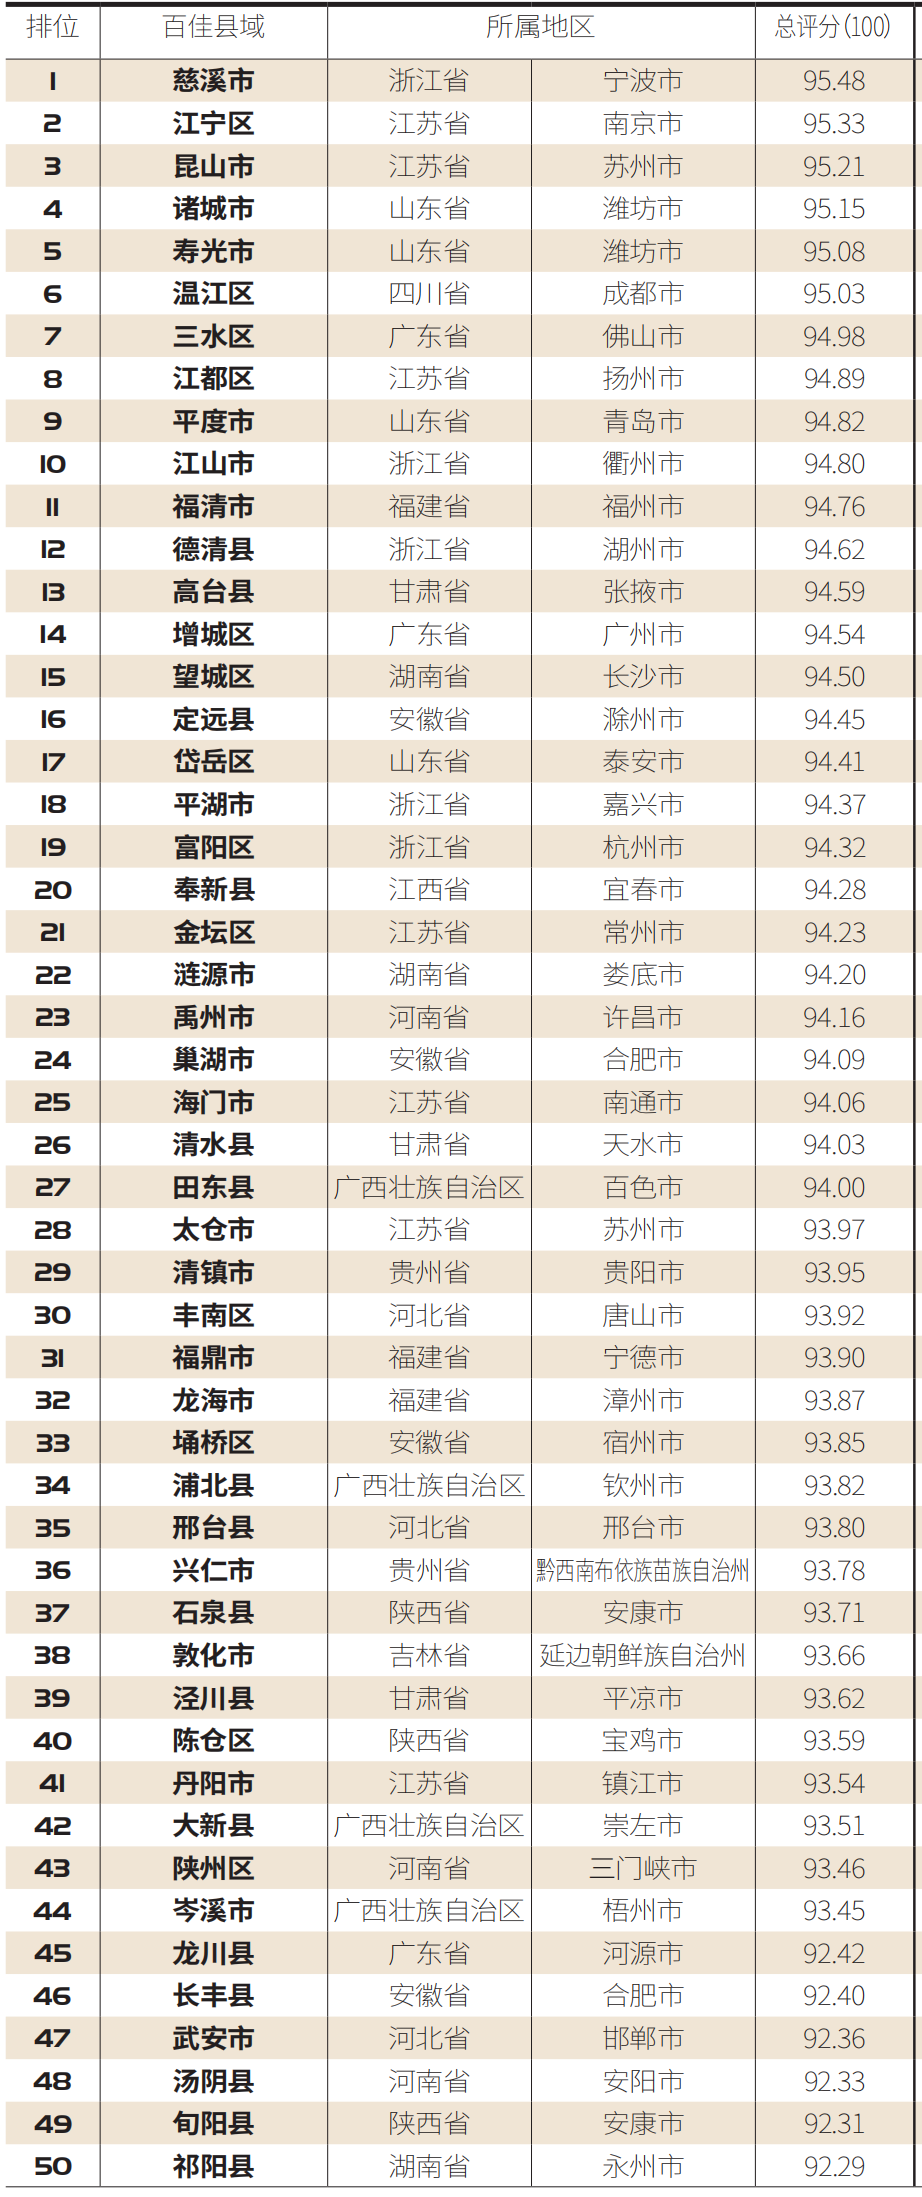 【百县榜】“2020中国职业教育百佳县市”榜单发布